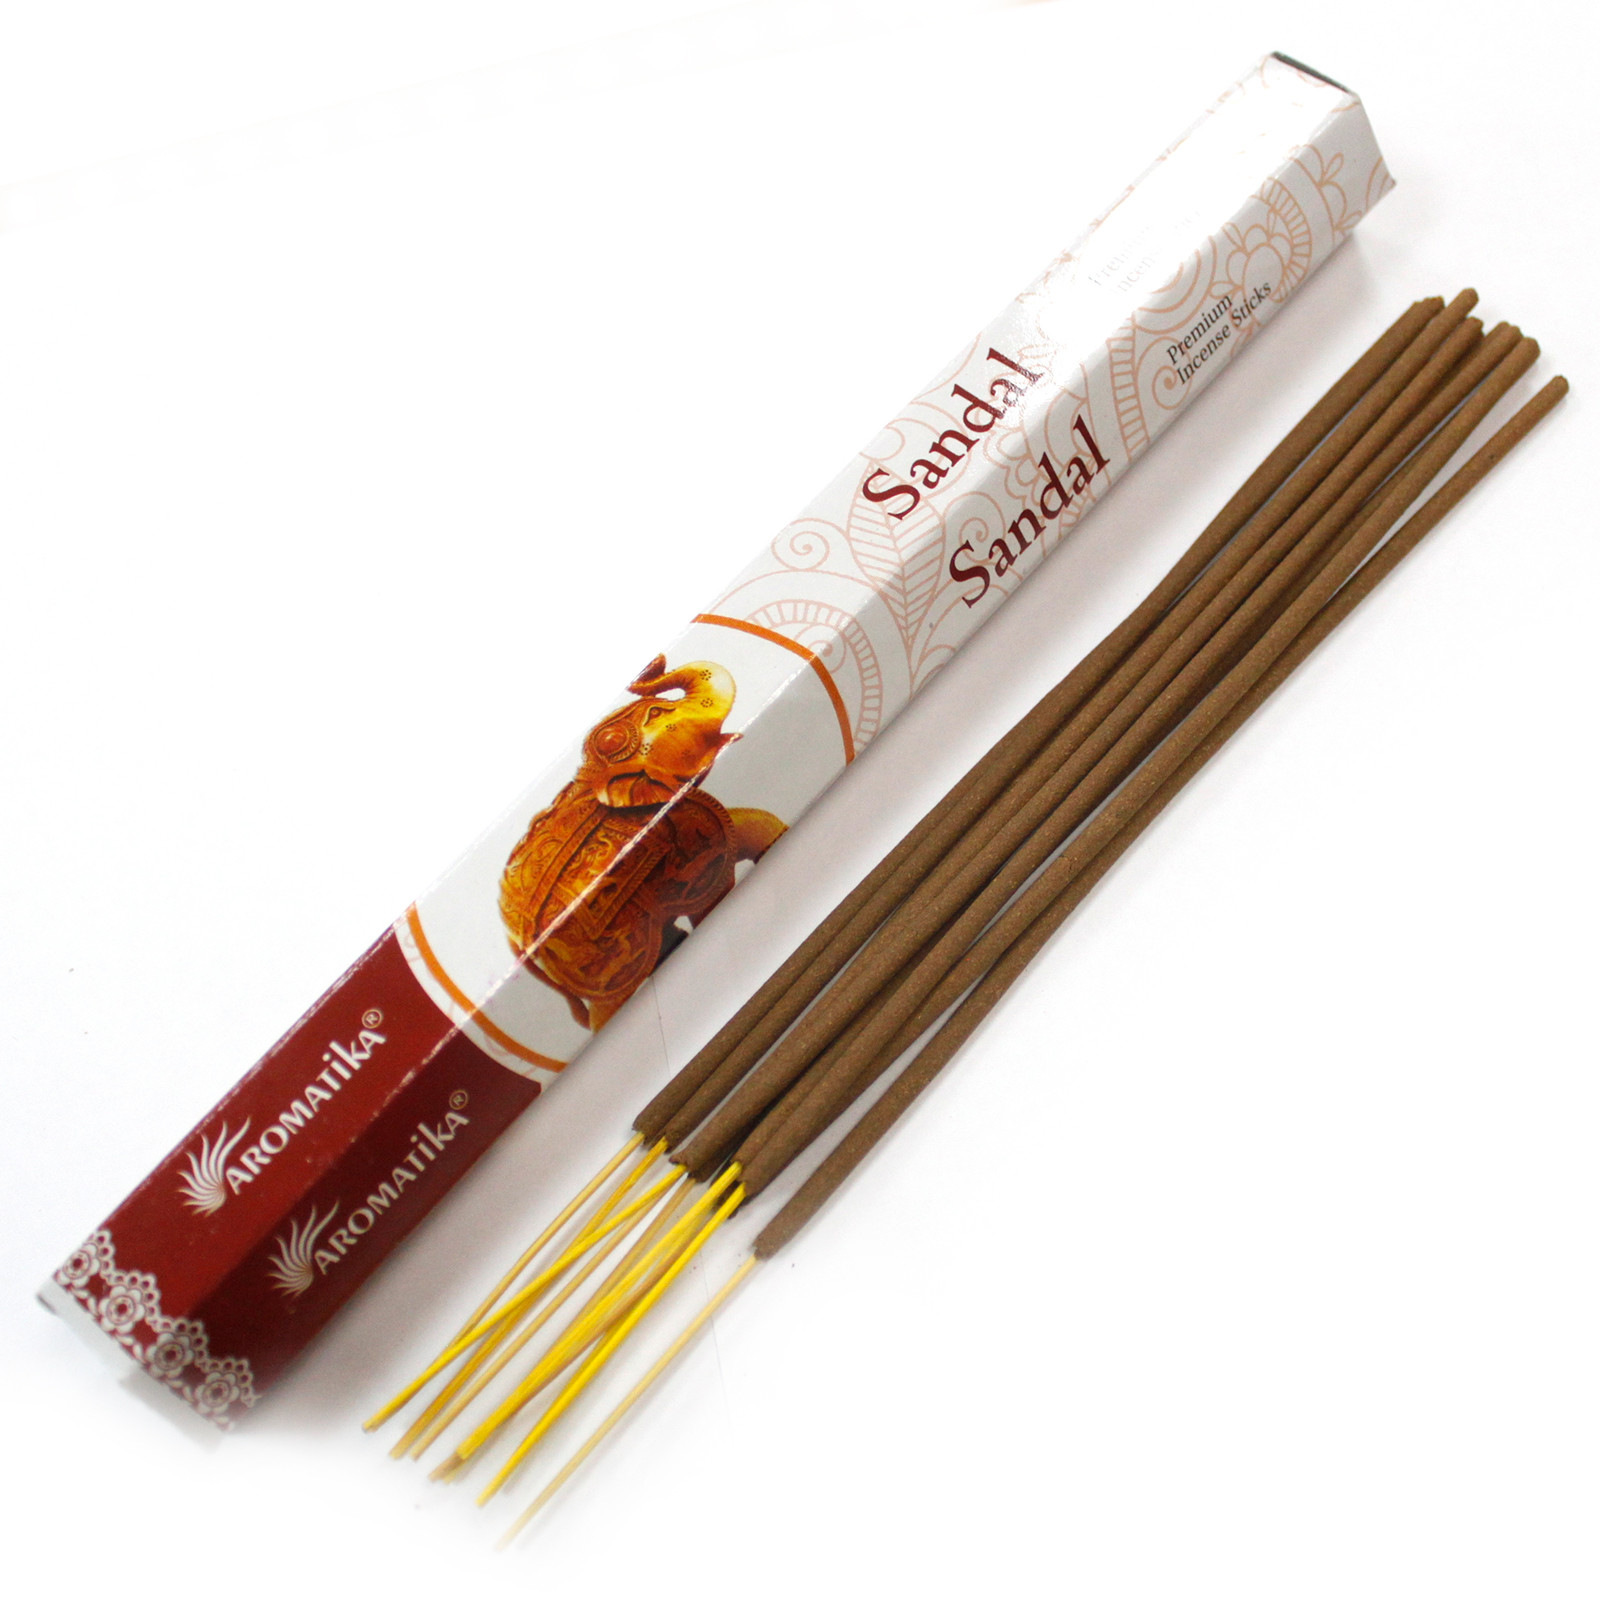 Sandalwood Aromatica Premium Incense Sticks